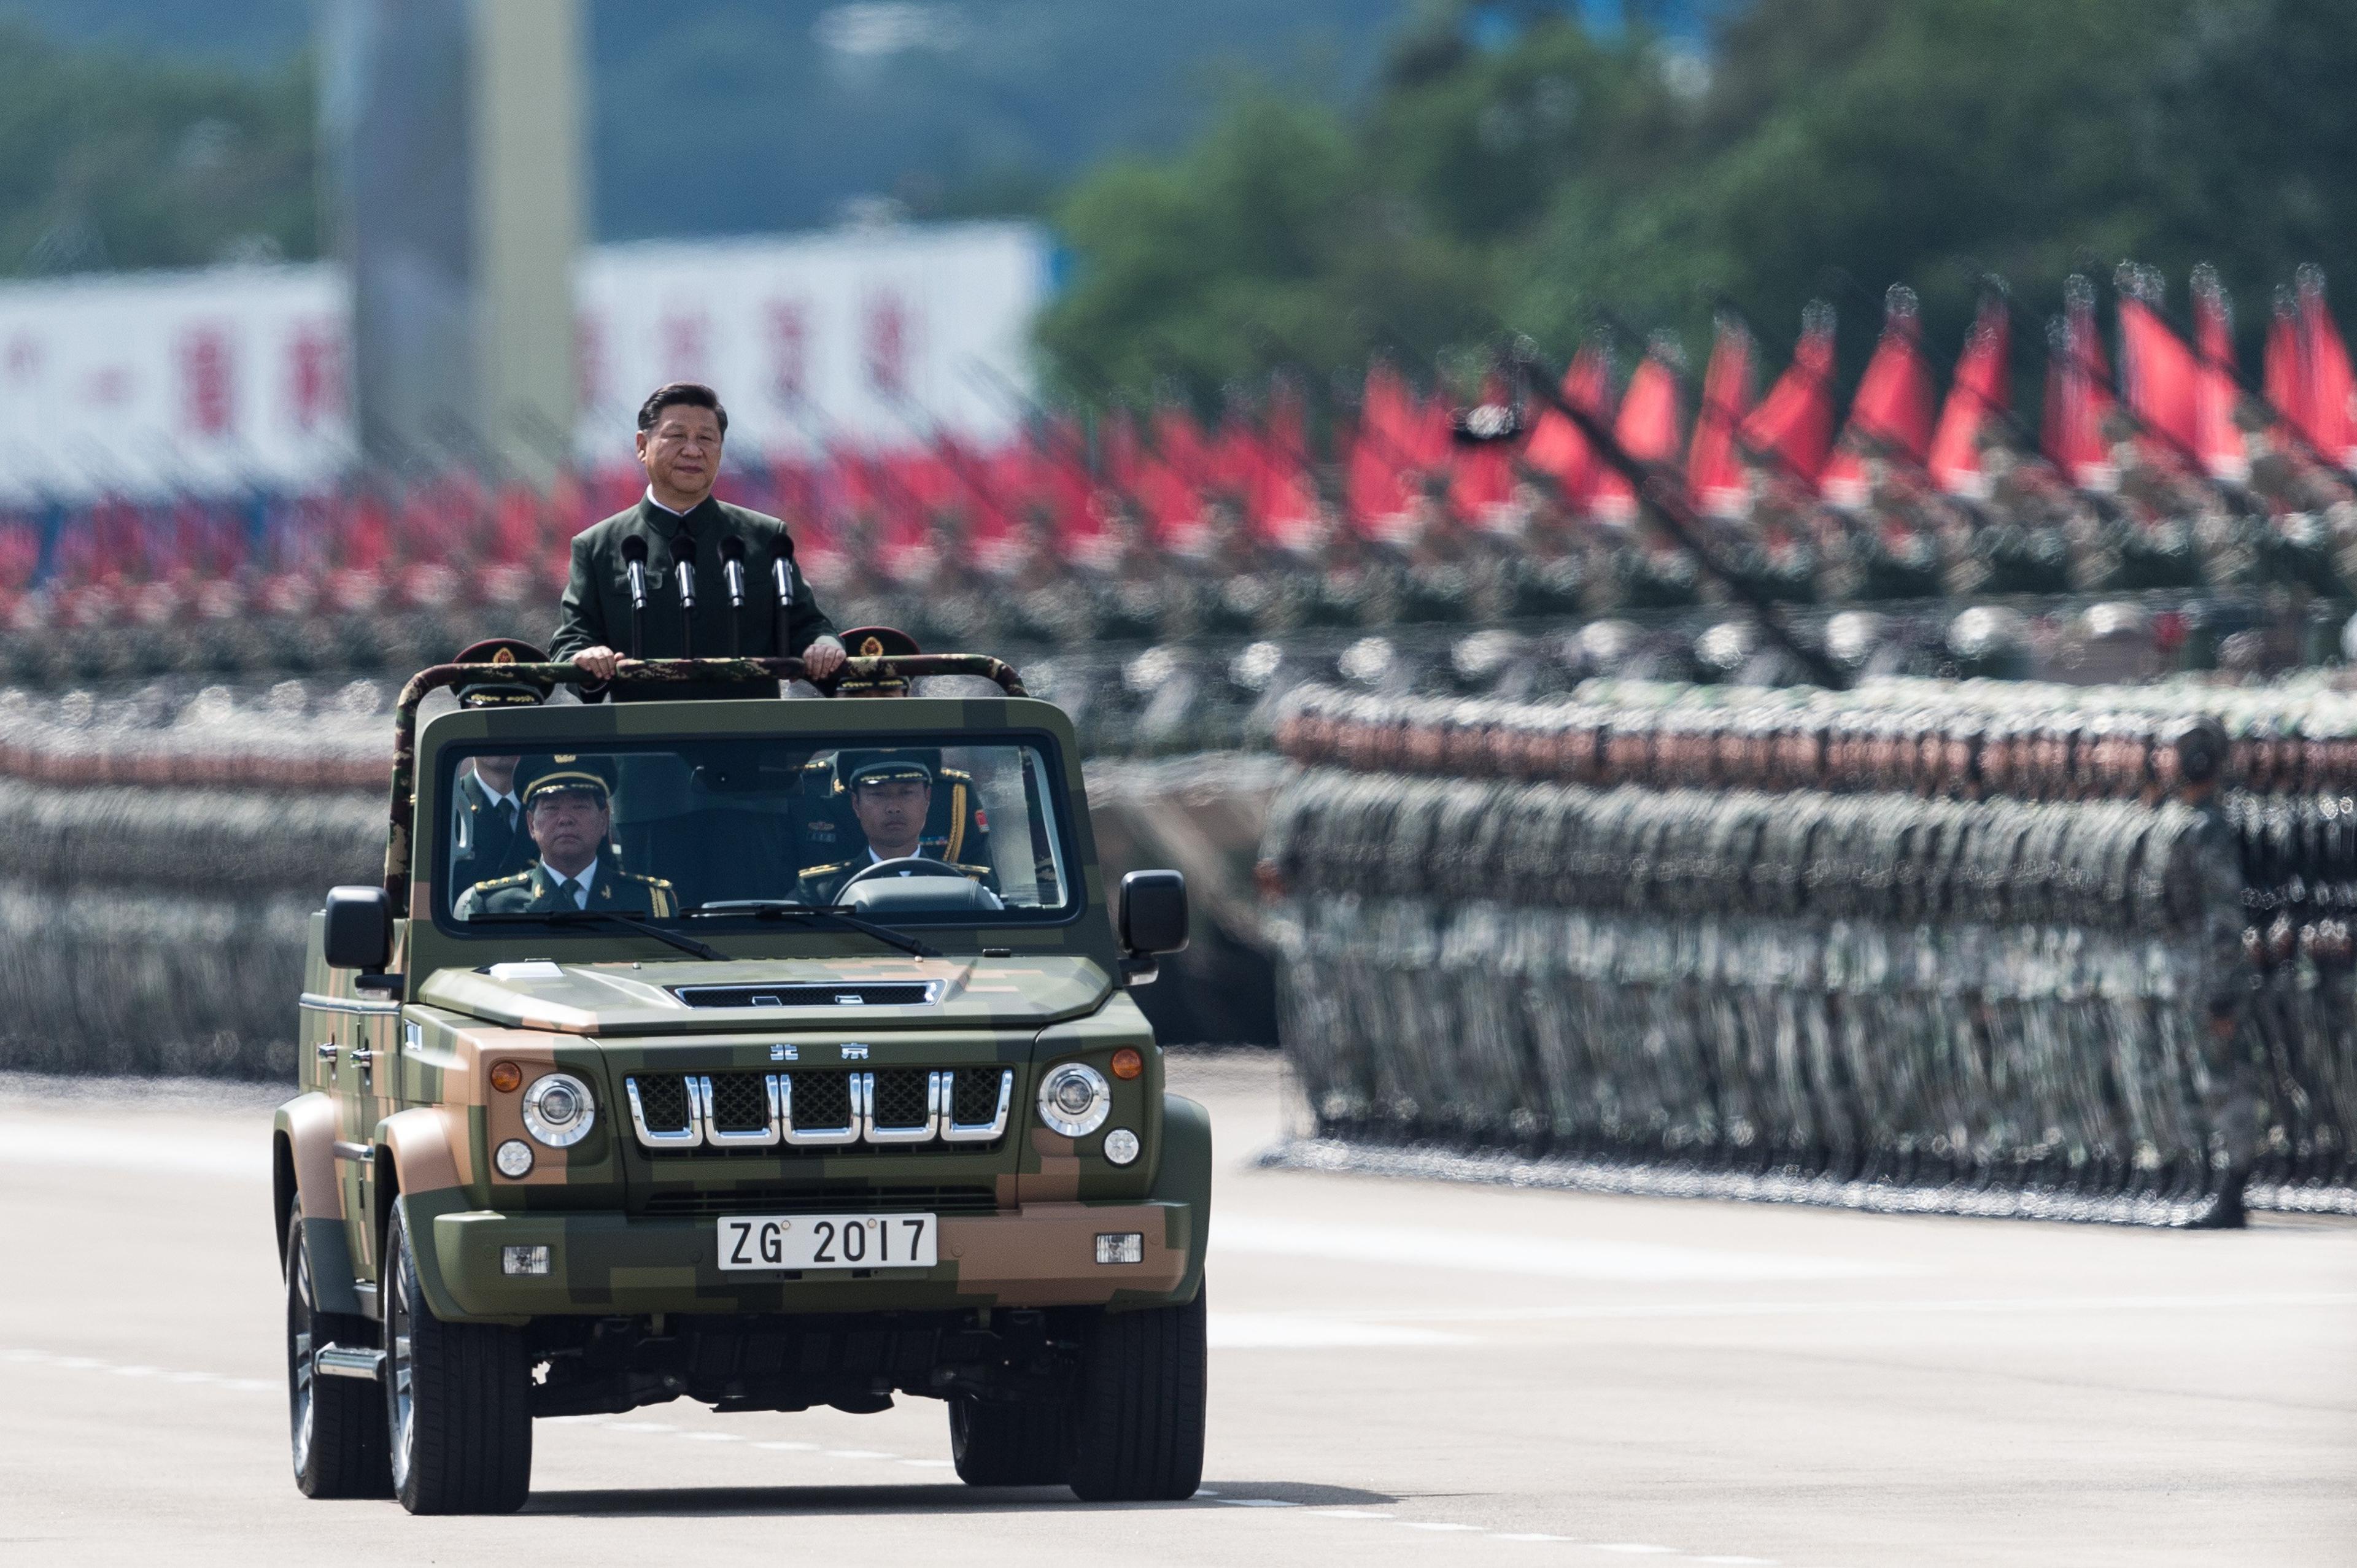 Przewodniczący Chińskiej Republiki Ludowej Xi Jinping podczas defilady wojskowej. Chiński przywódca jest wieziony wojskowym samochodem tak, że wystaje ponad jego dach i może pozdrawiać żołnierzy. W tle równe zastępy wojska i uzbrojenia.